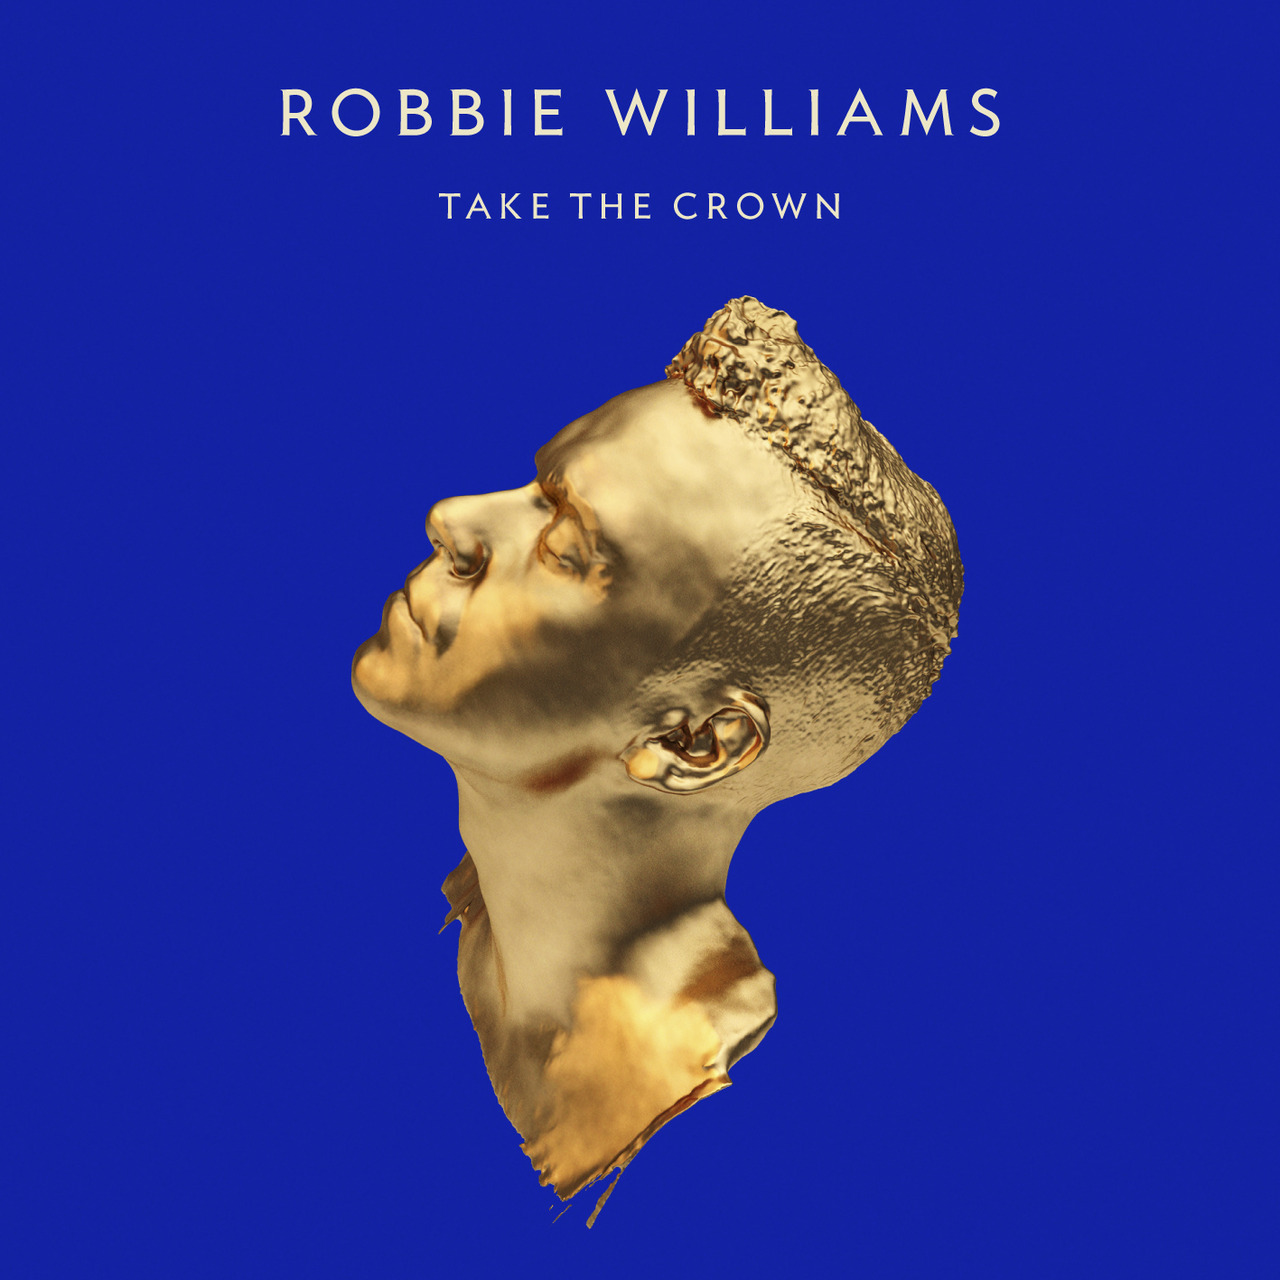 http://3.bp.blogspot.com/-0ZcpdfDXcUo/UEUdIQ-UCCI/AAAAAAABIA4/f0FaMZomaUQ/s1600/Robbie+Williams+Take+The+Crown.jpg